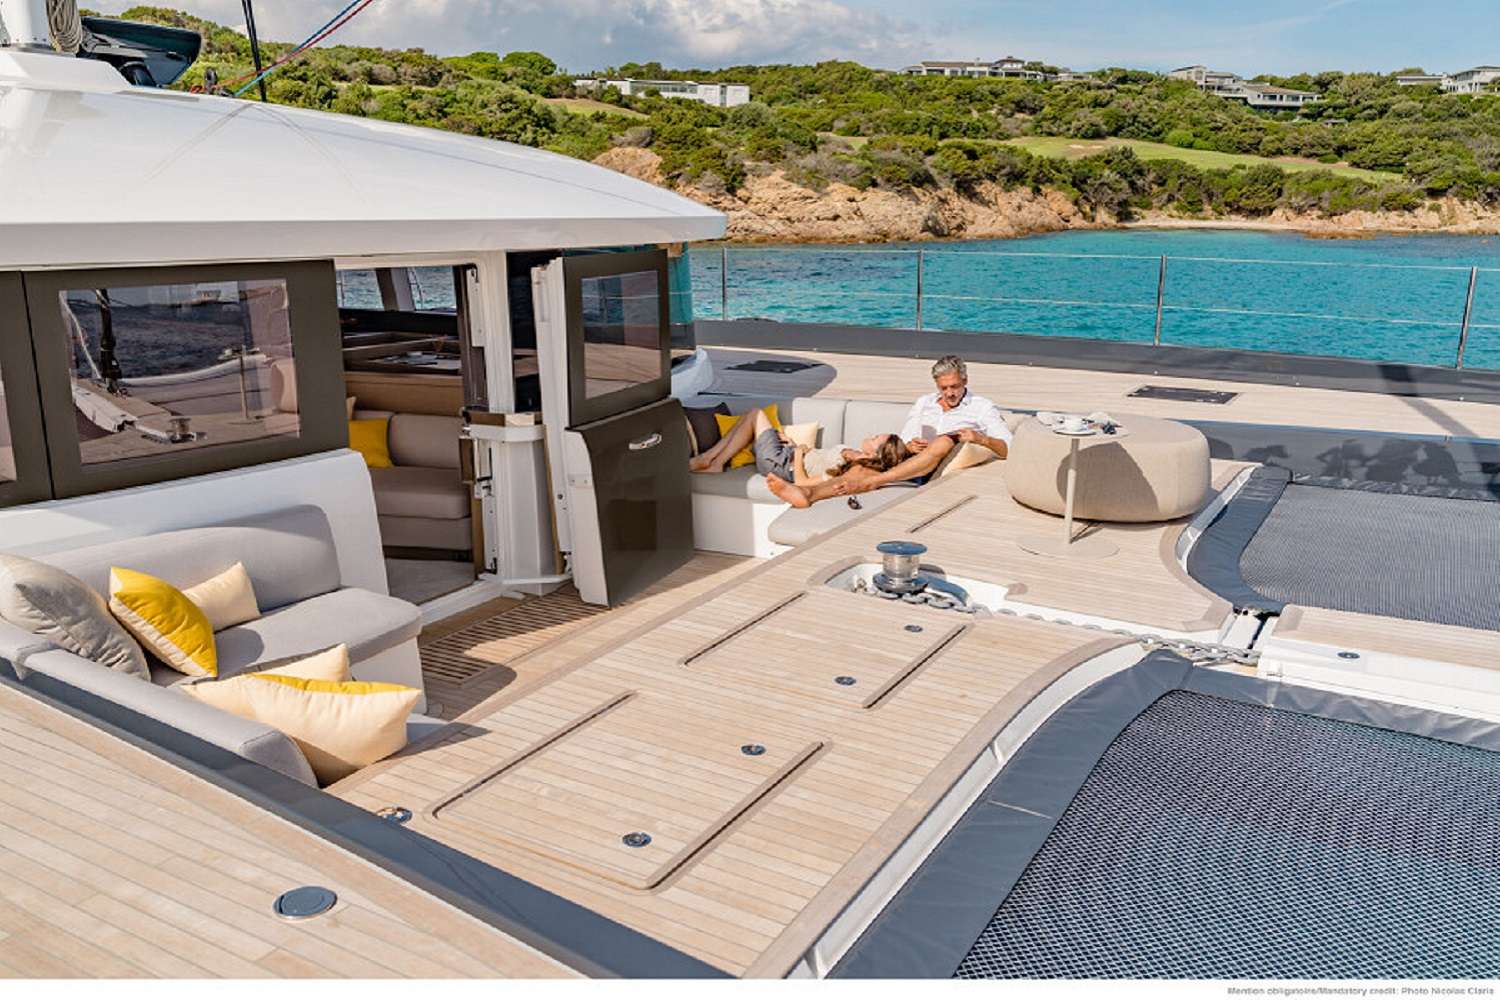 KAJIKIA - Yacht Charter Antalya & Boat hire in W. Med -Naples/Sicily, Greece, W. Med -Riviera/Cors/Sard., Turkey, Croatia | Winter: Caribbean Virgin Islands (US/BVI), Caribbean Leewards, Caribbean Windwards 5